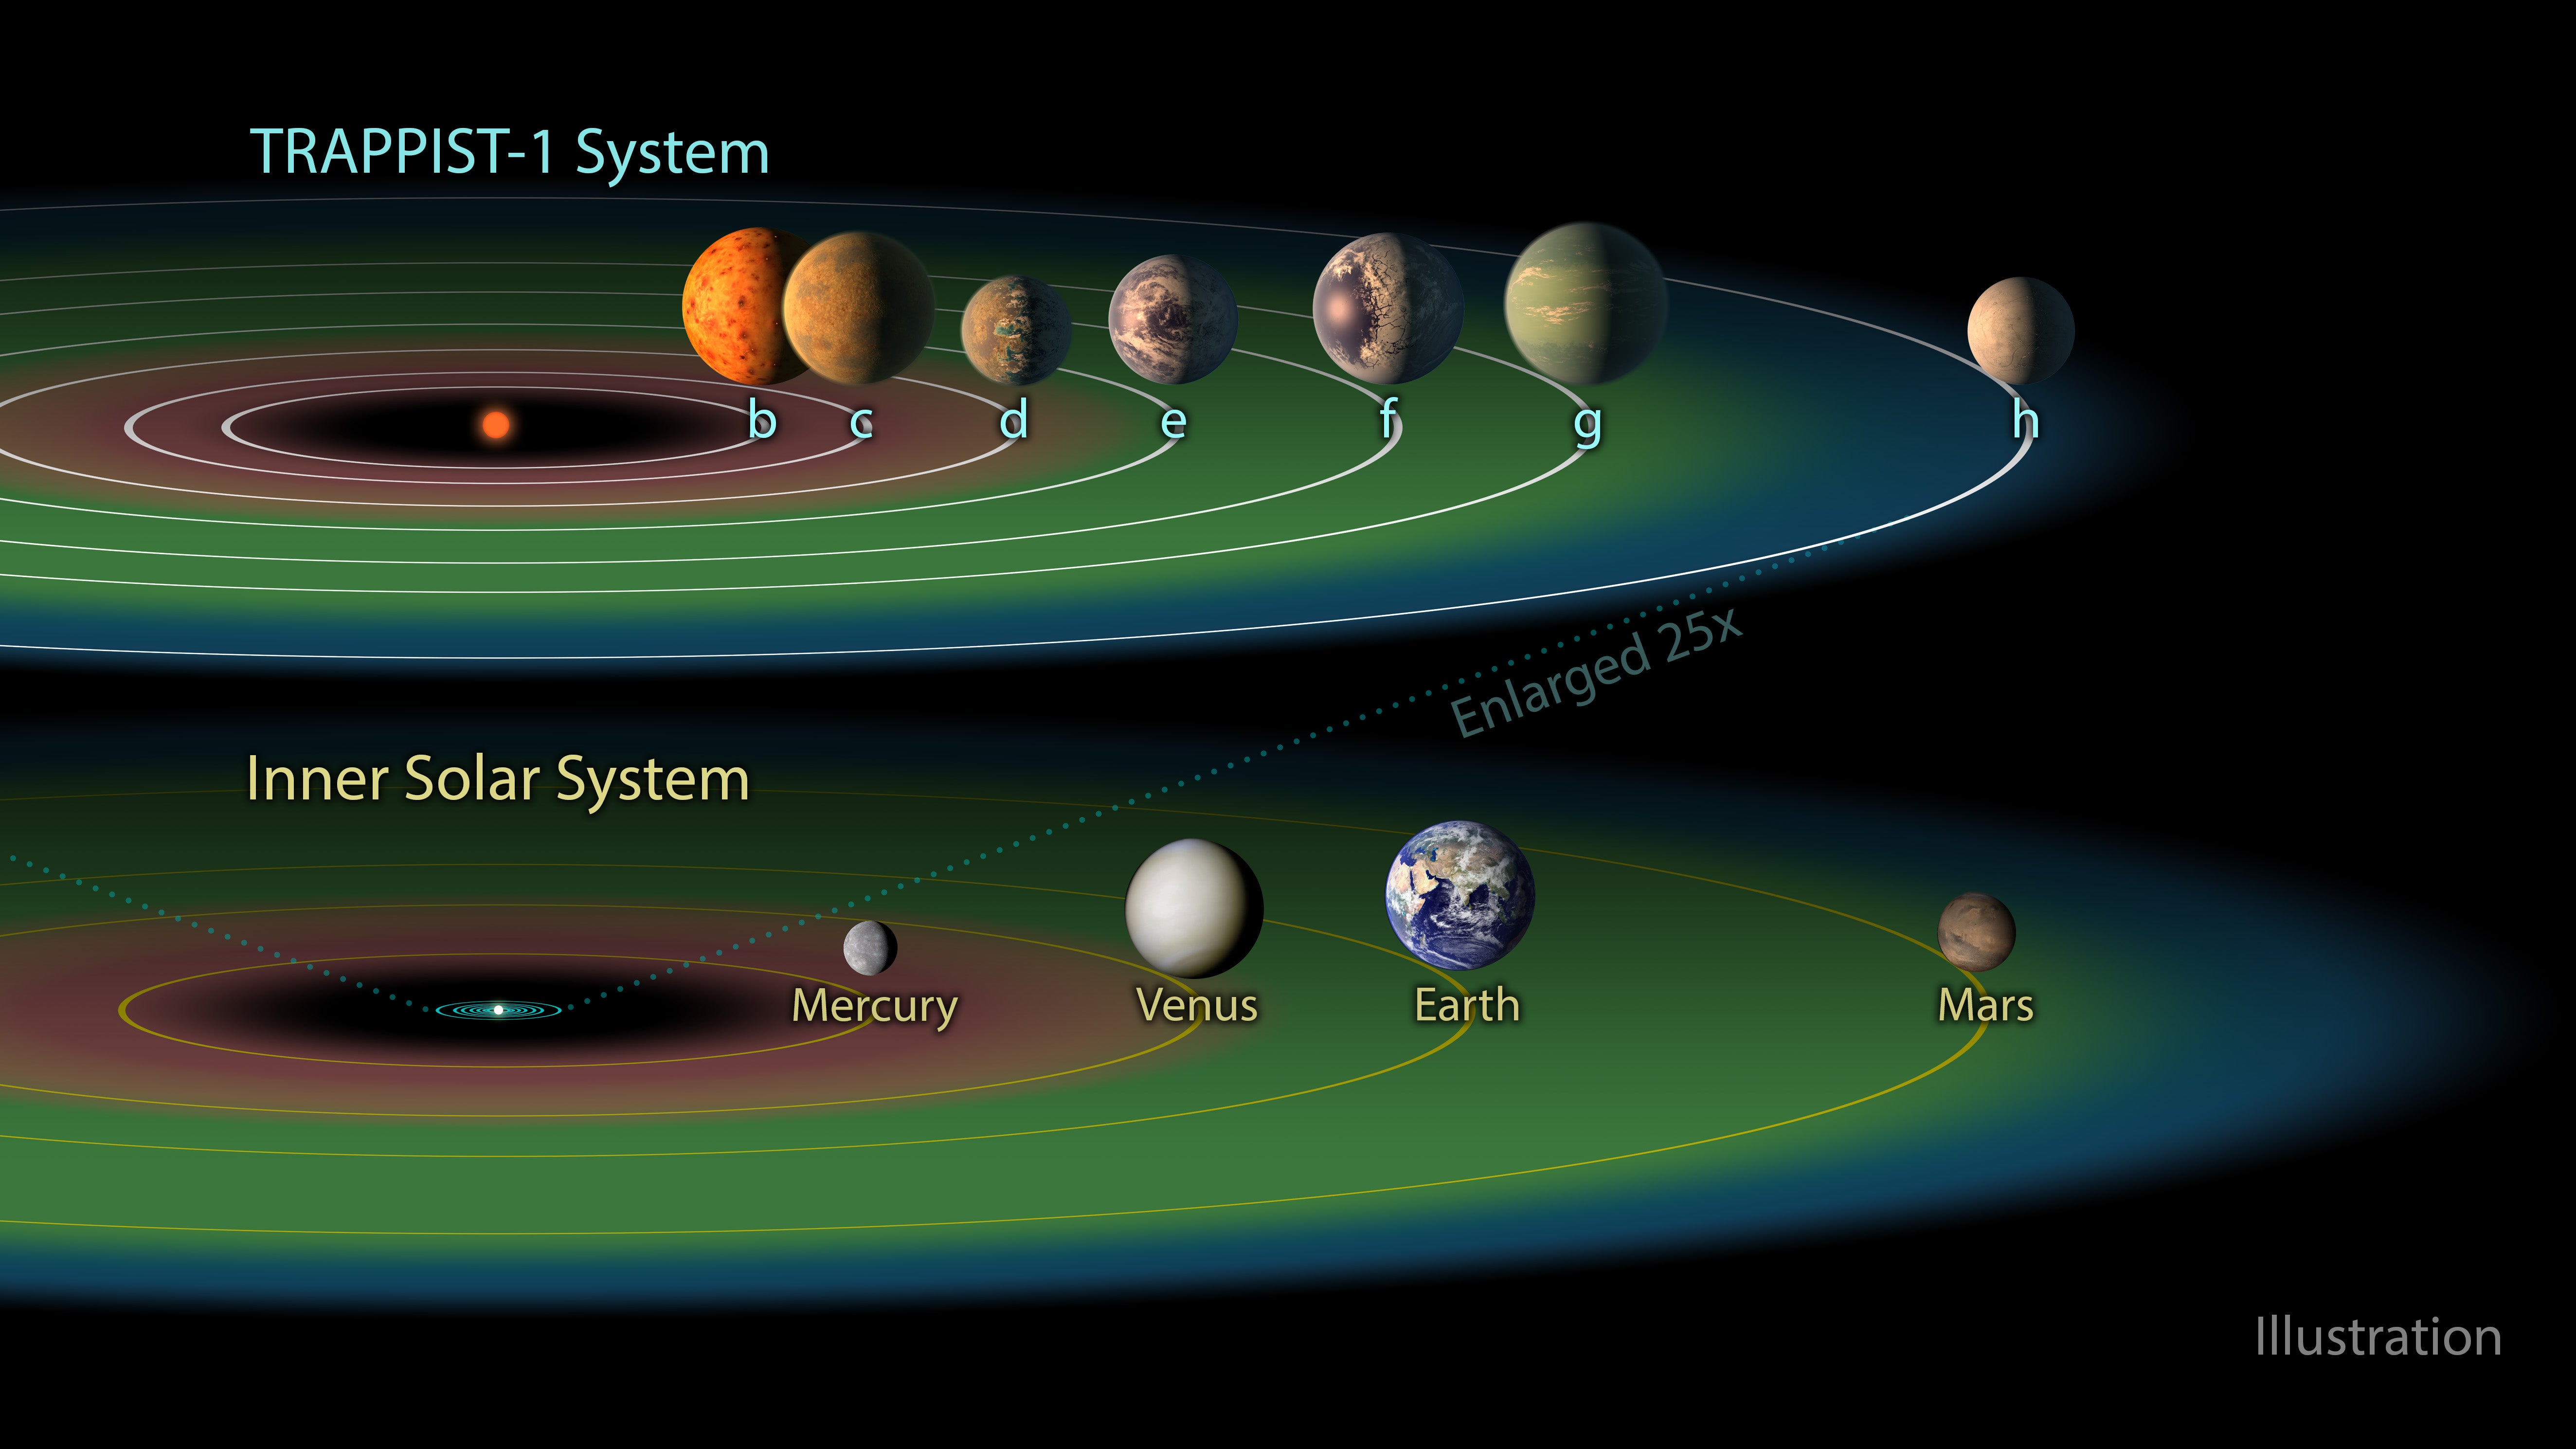 رسم توضيحي لنظام TRAPPIST-1 ومنطقته الصالحة للسكن ونظامنا الشمسي الداخلي ومنطقته الصالحة للسكن.